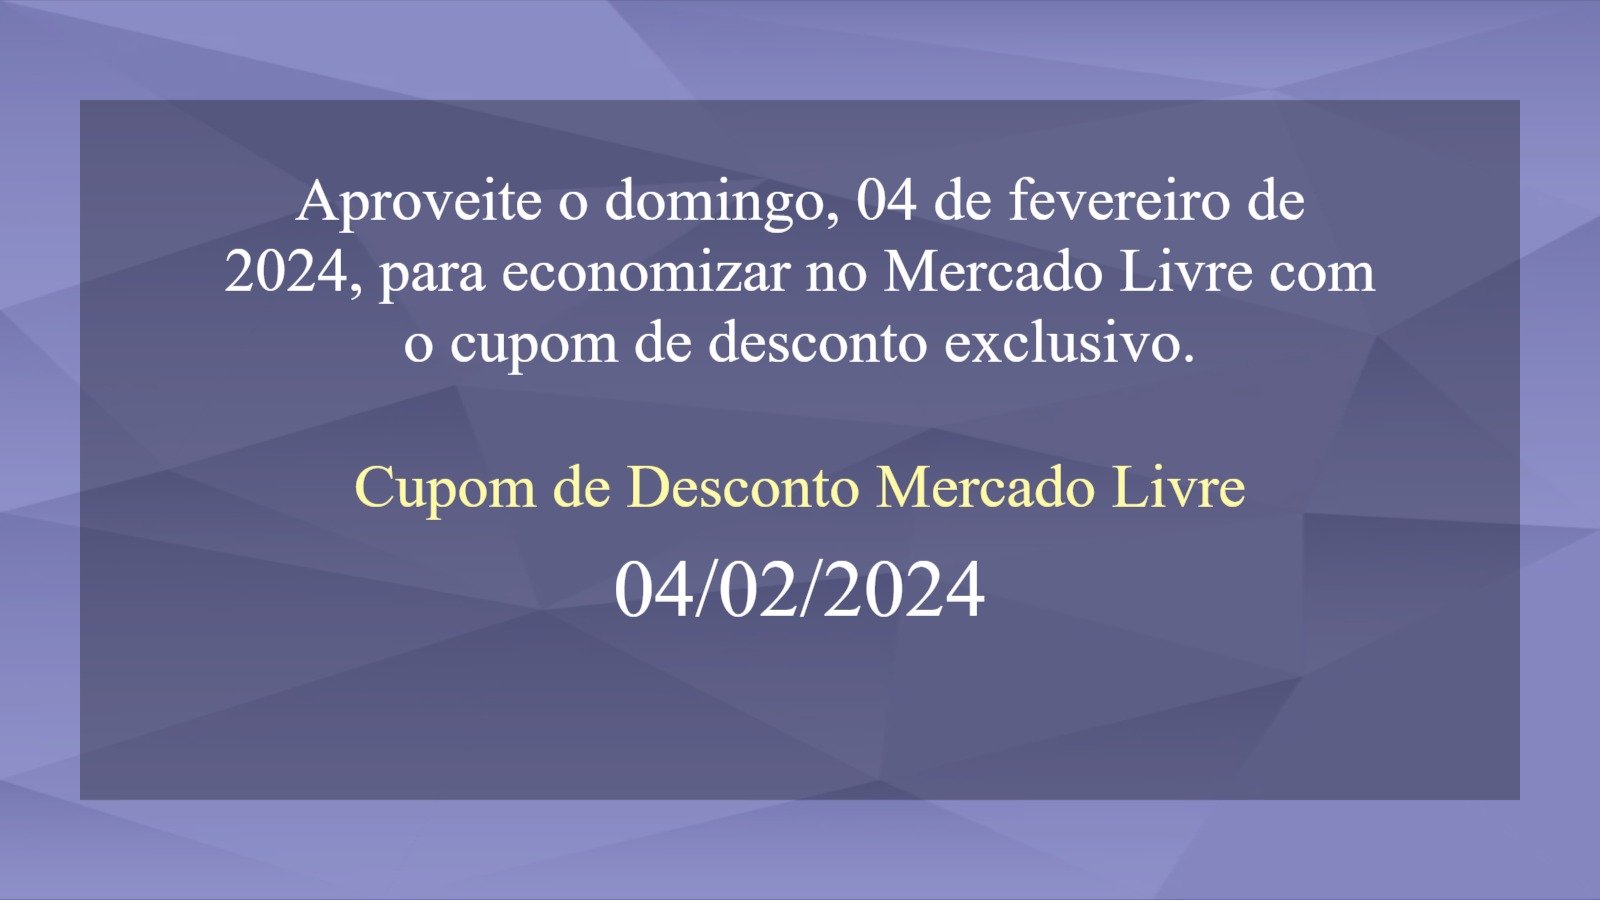 Cupom de Desconto Mercado Livre 04 de fevereiro de 2024 - (domingo, 04/02/2024) - hoje